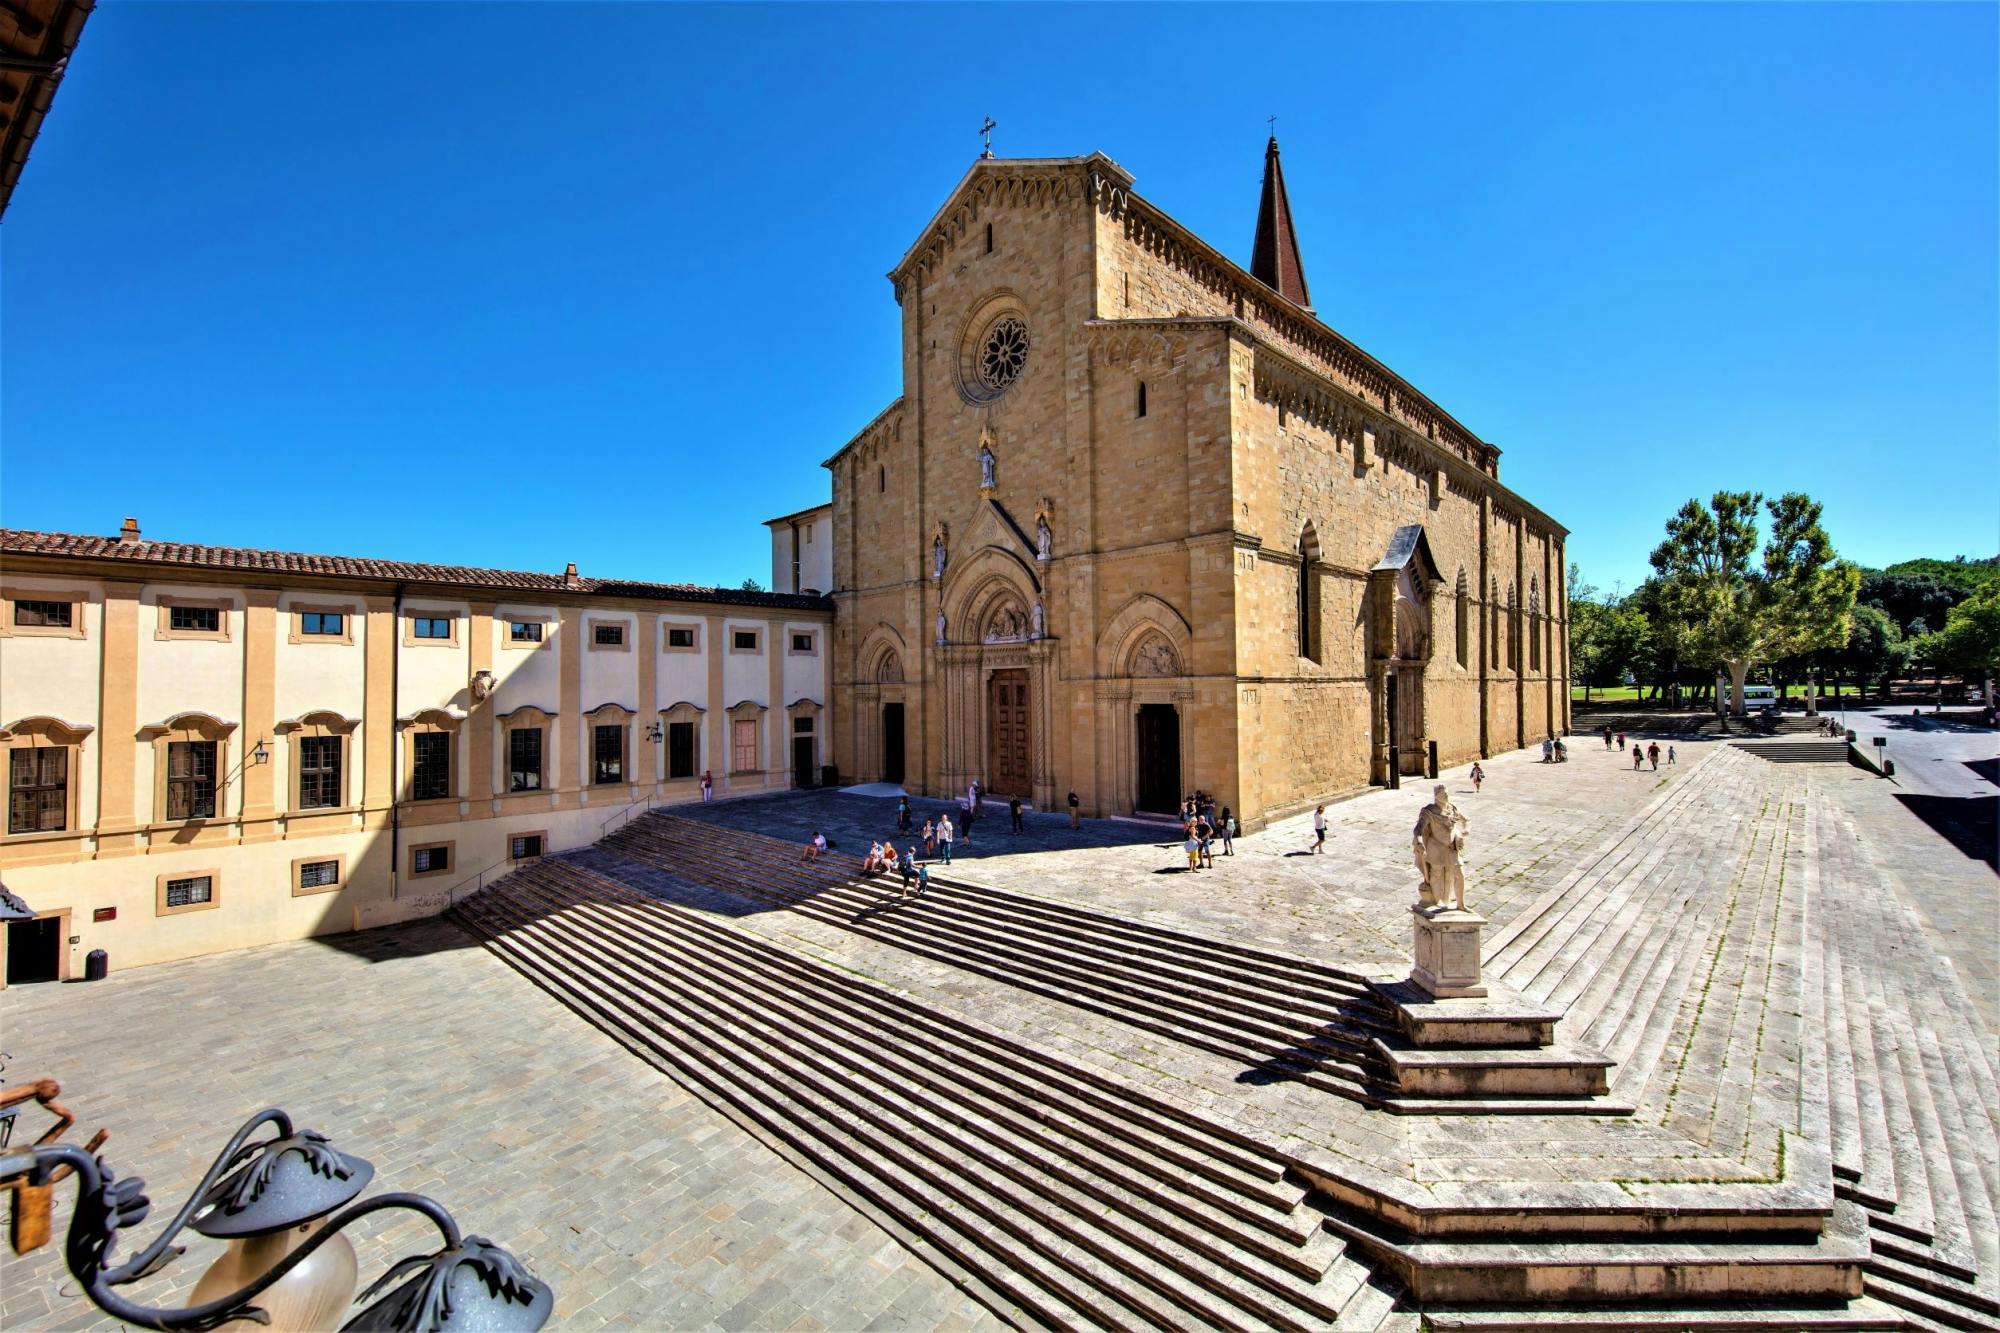 Visite du complexe de la cathédrale d'Arezzo avec audioguide